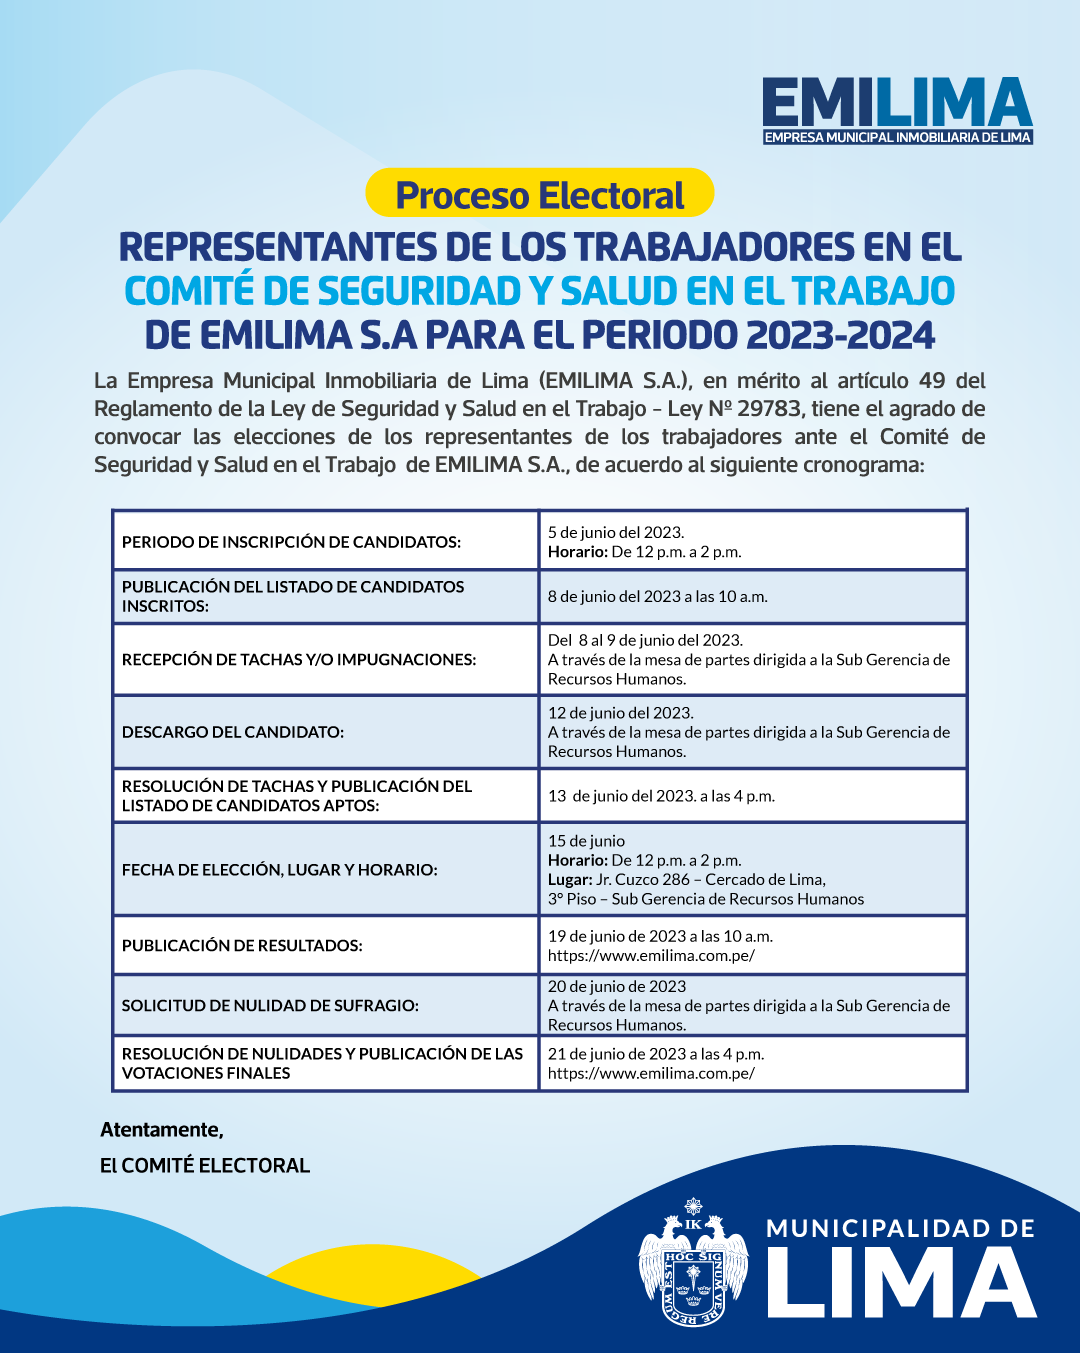 PROCESO ELECTORAL DE LOS REPRESENTANTES DE LOS TRABAJADORES EN EL COMITÉ DE SEGURIDAD Y SALUD EN EL TRABAJO DE EMILIMA S.A PARA EL PERIODO 2023-2024